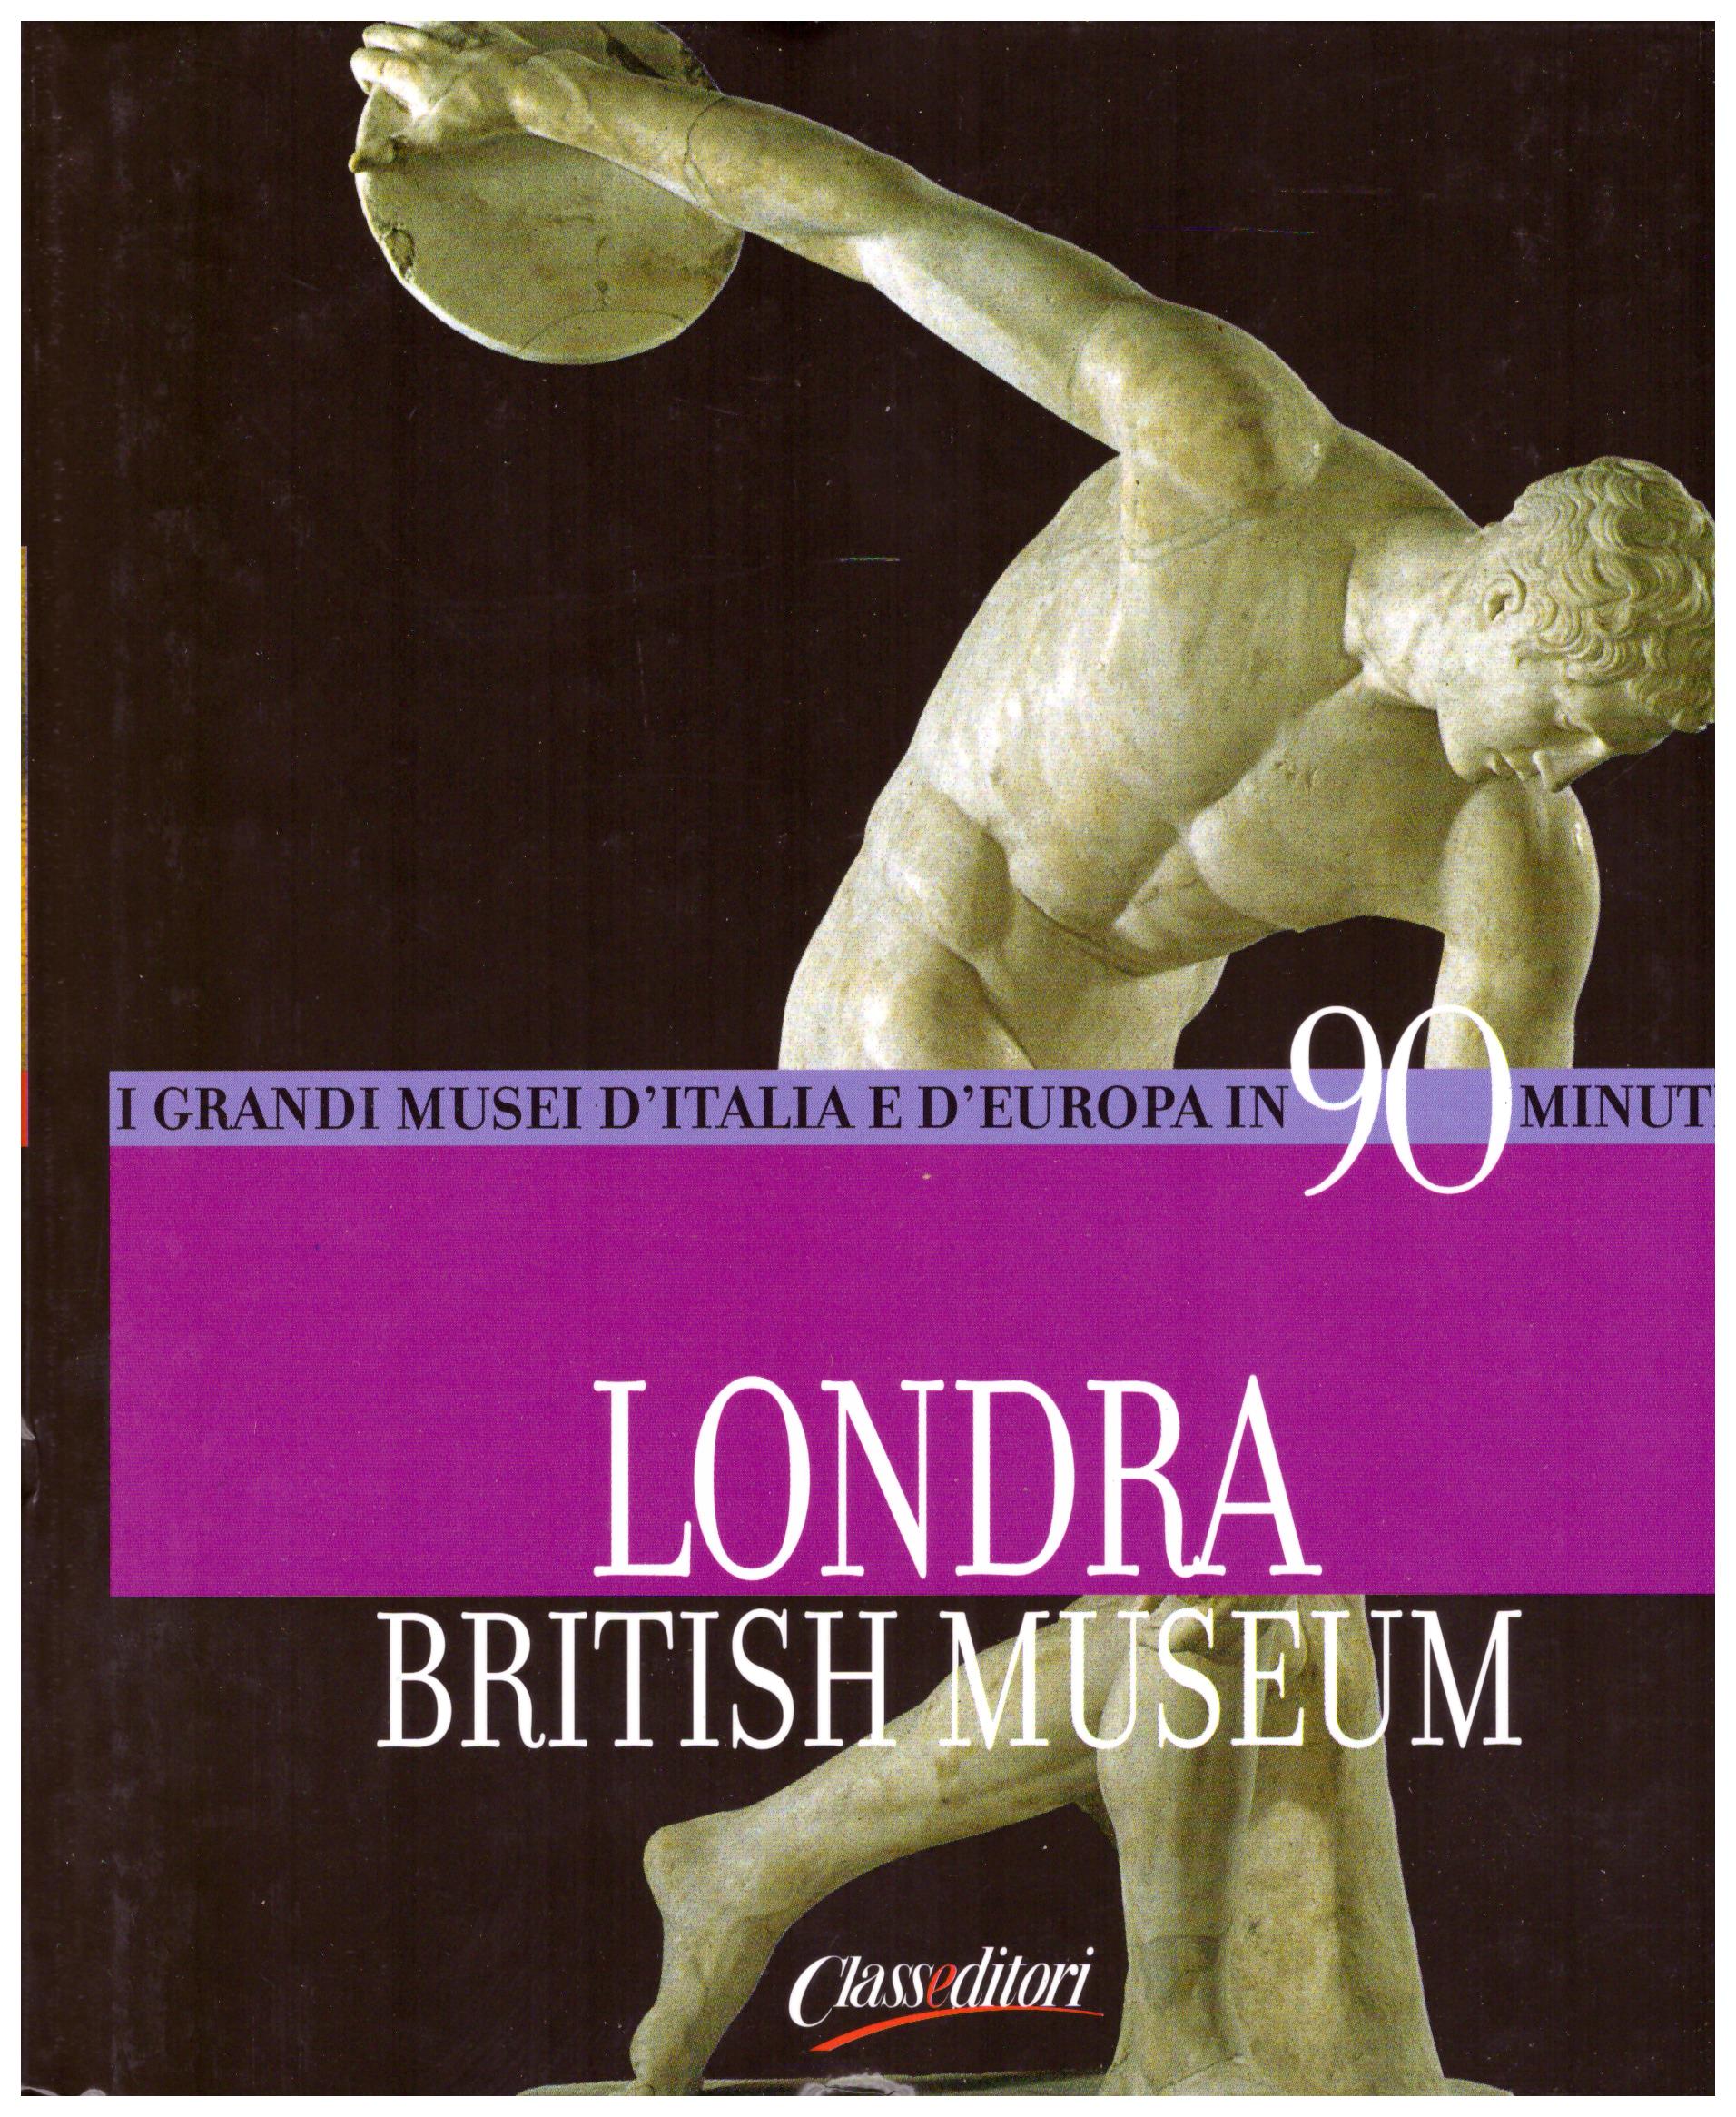 Titolo: I grandi musei d'italia e d'Europa in 90 minuti, Londra British Museum Autore : AA.VV.  Editore: class editori